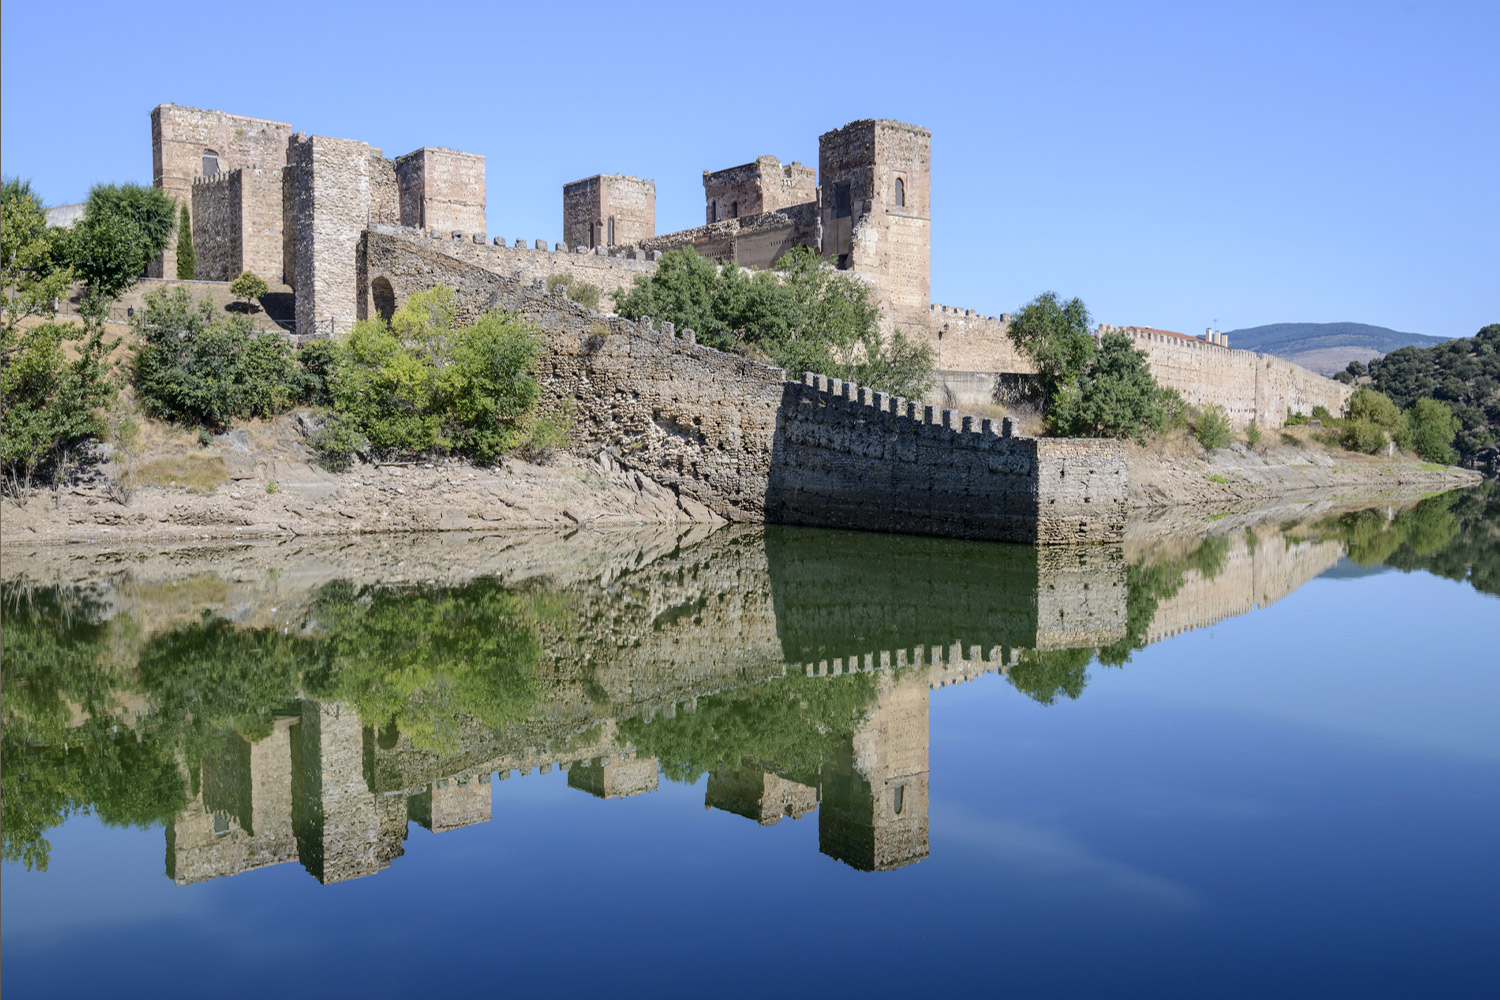 Buitrago del Lozoya fortress